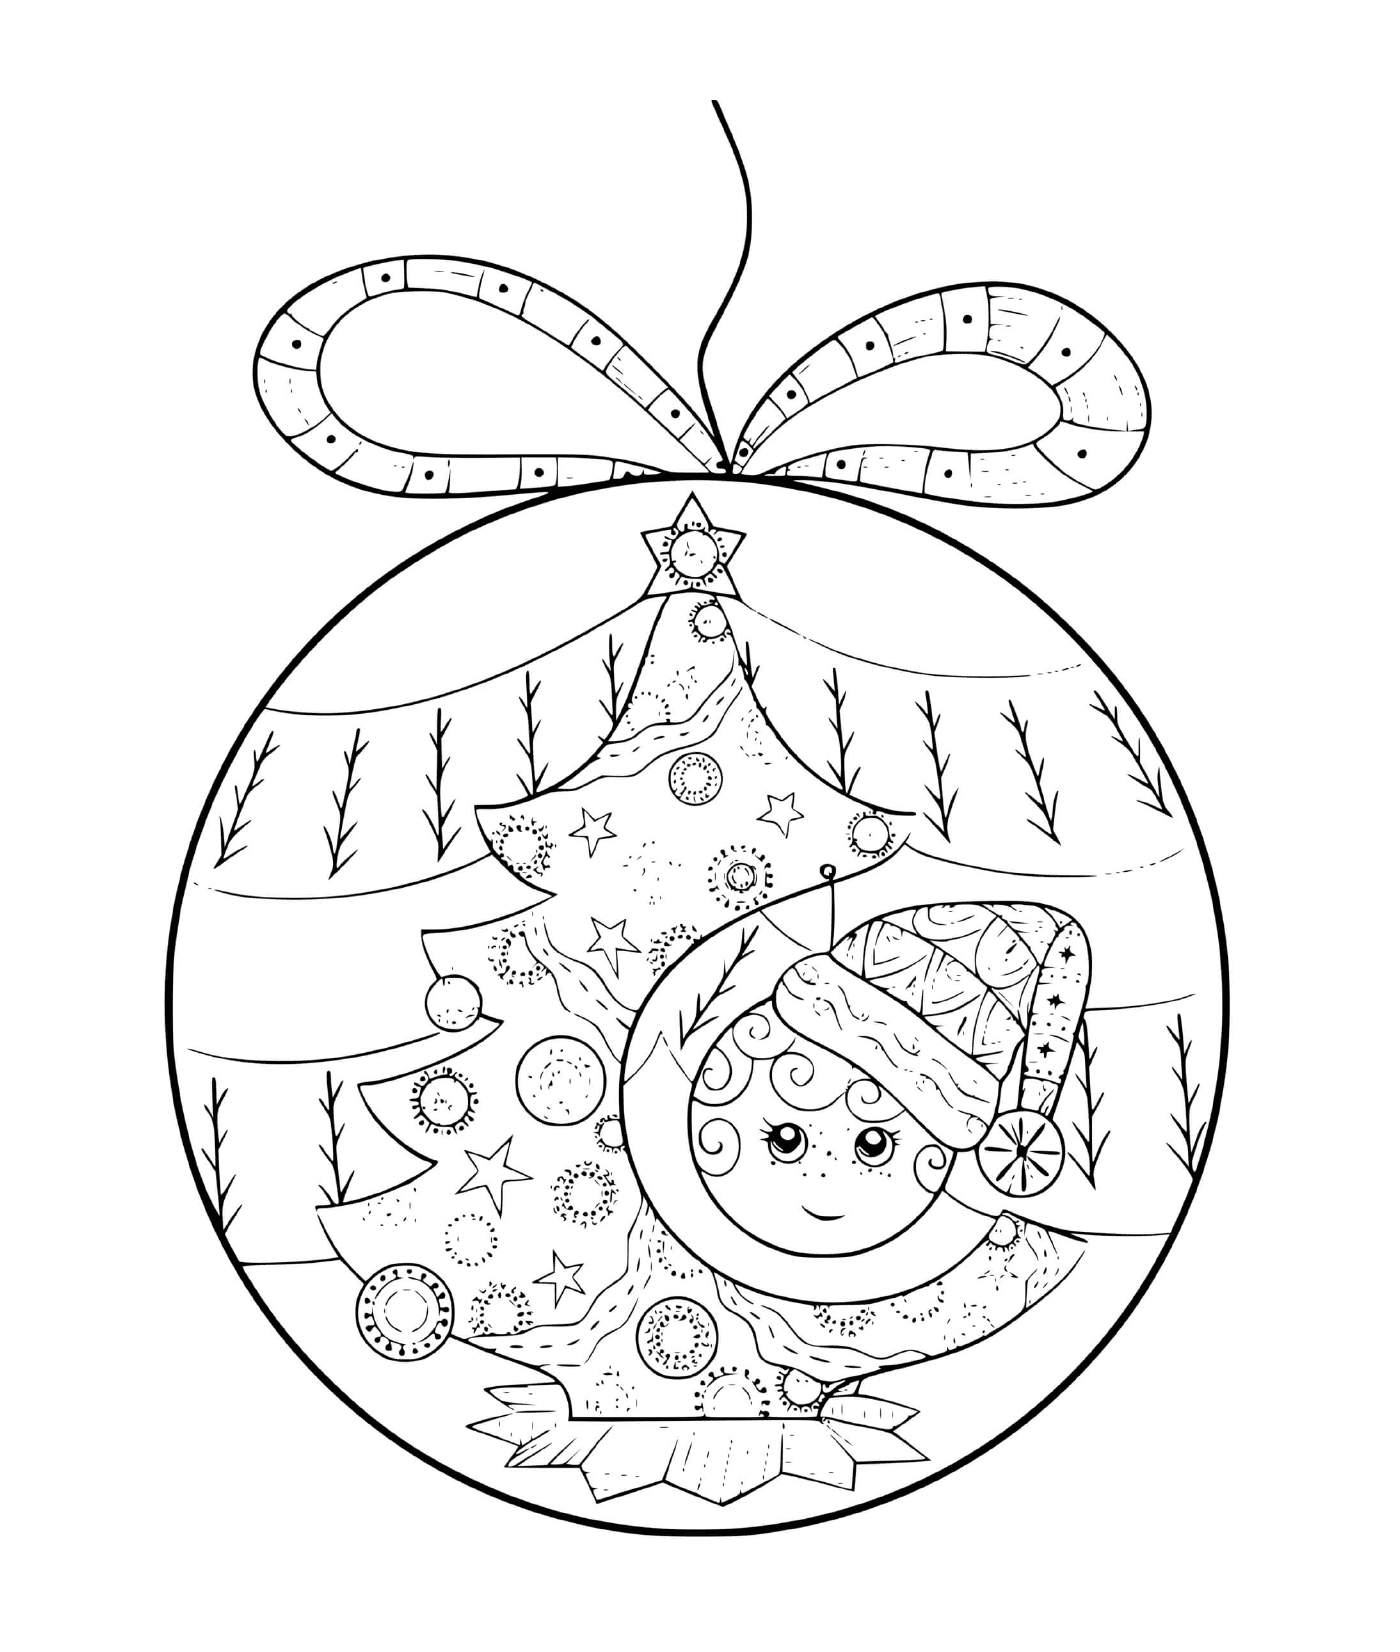  Ein Weihnachtsball mit einem Kind und einem Baum 